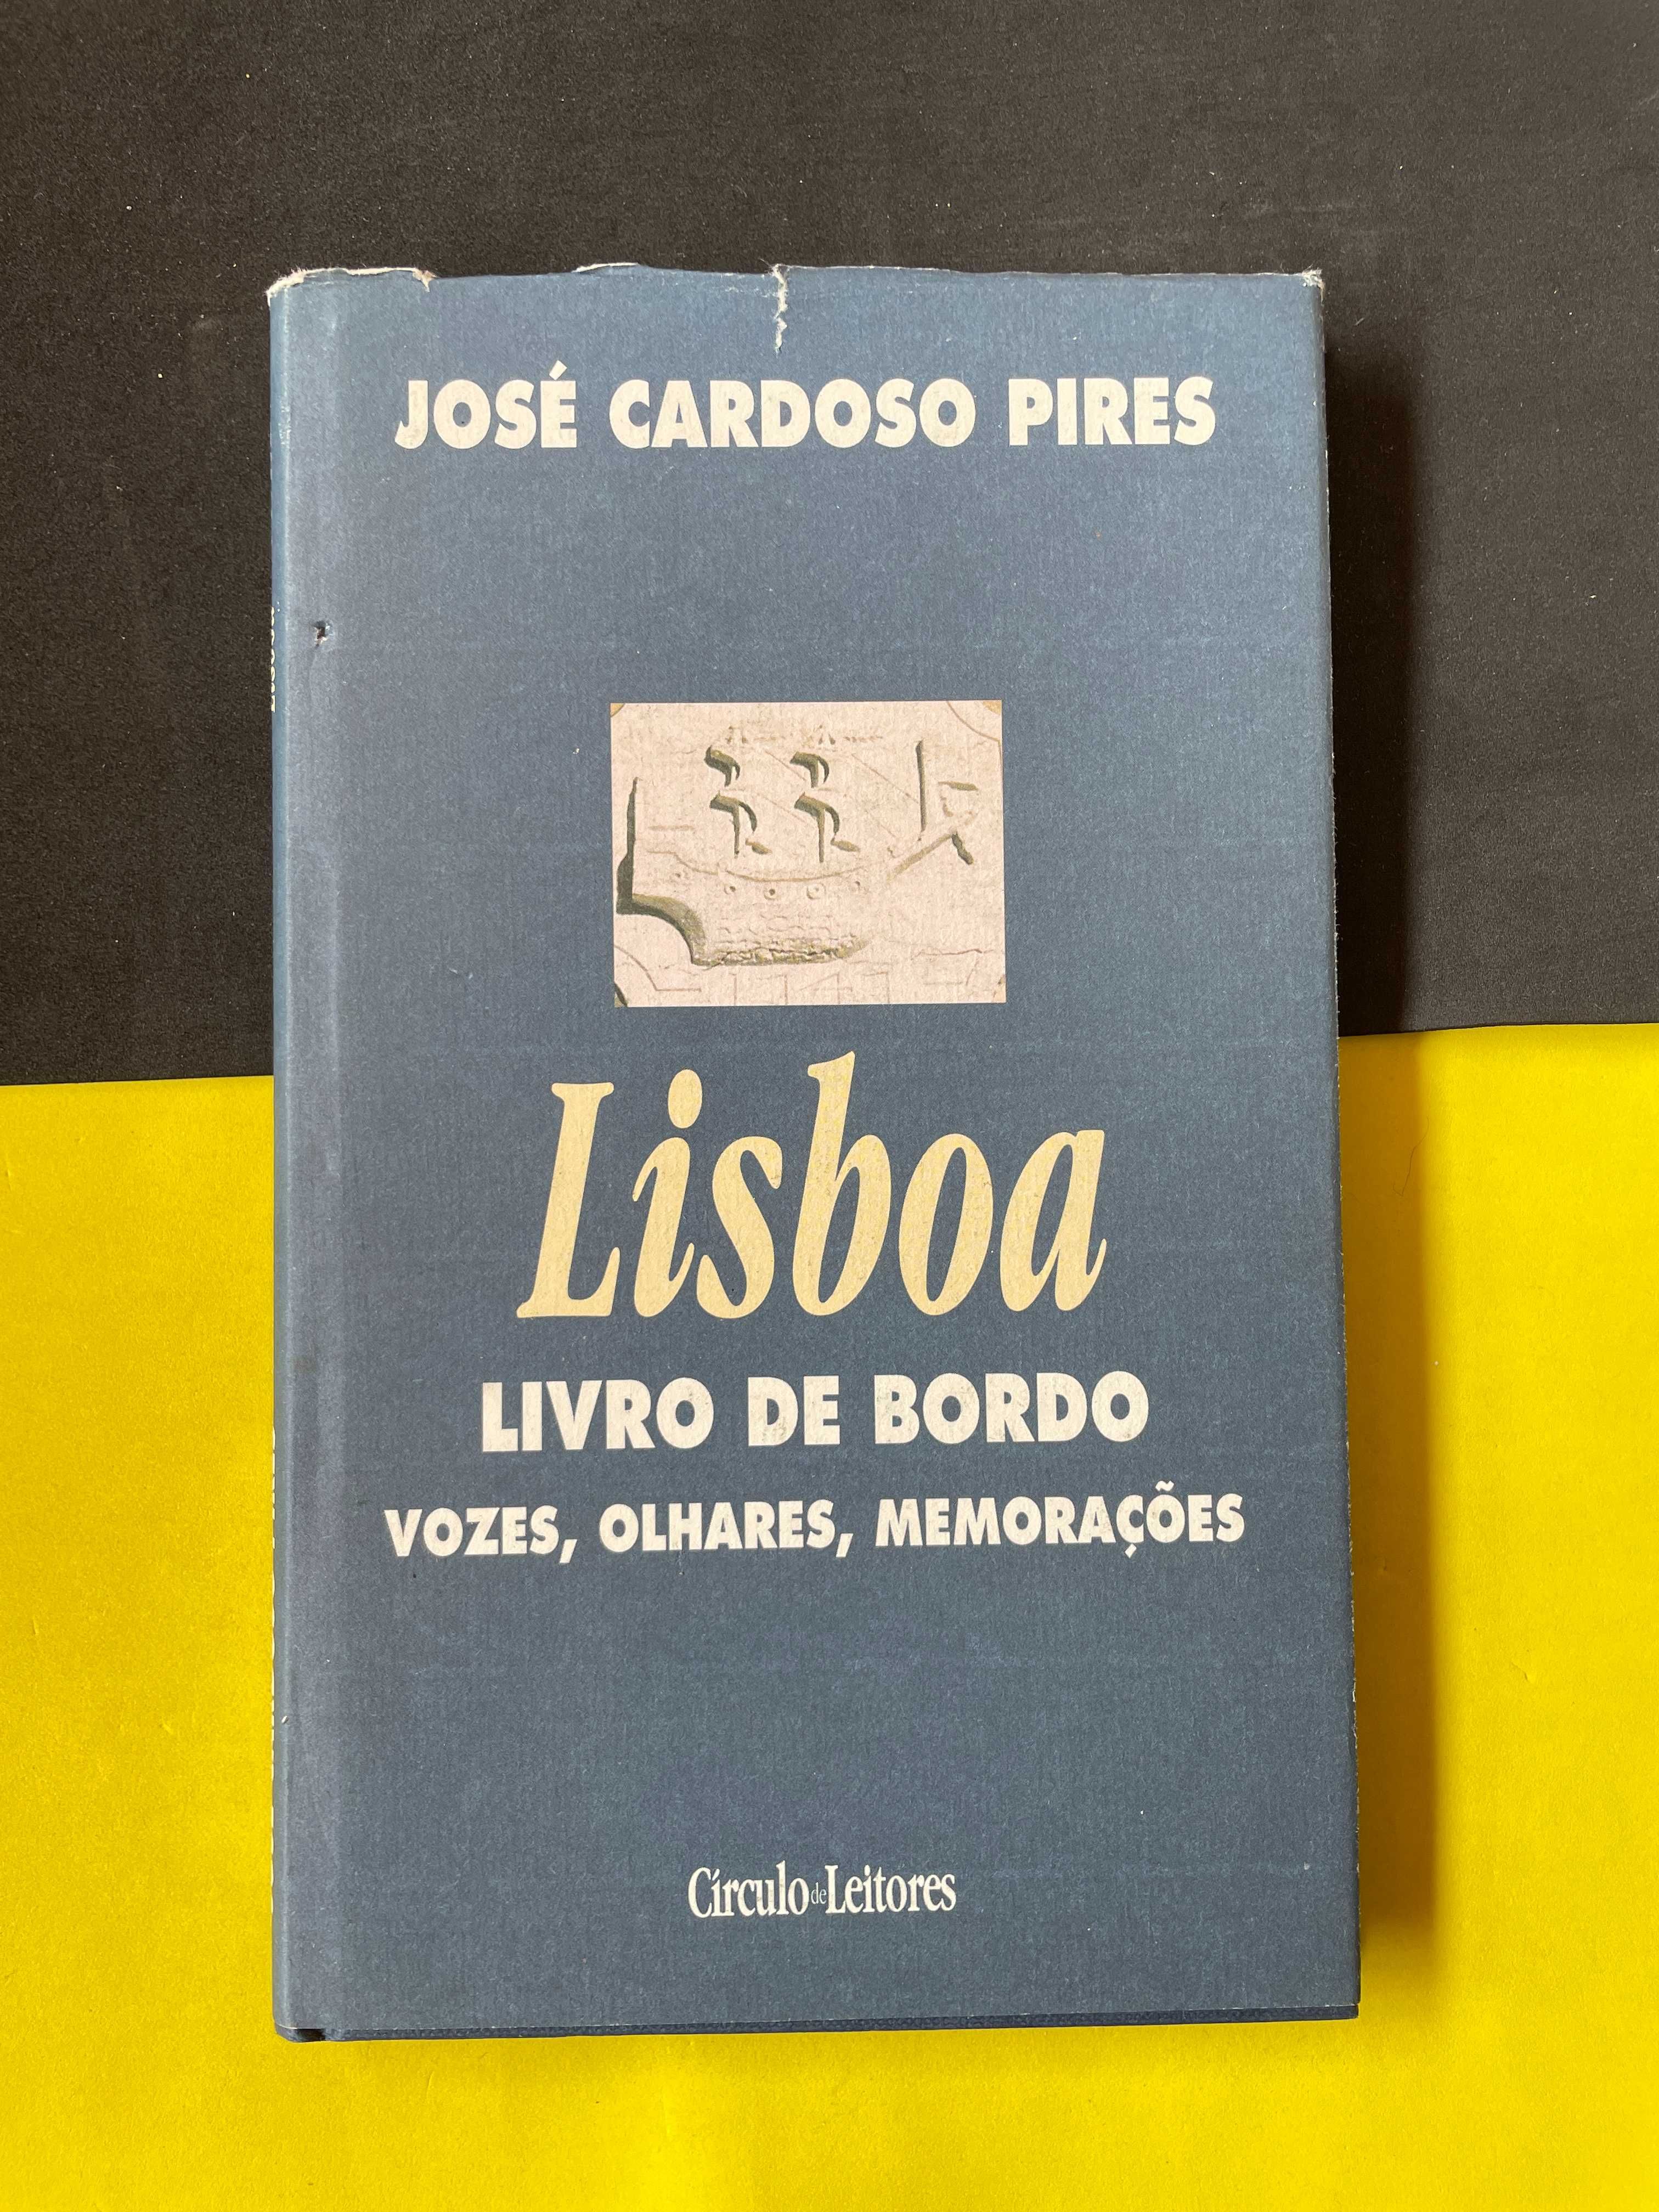 José Cardoso Pires- Lisboa livro de bordo